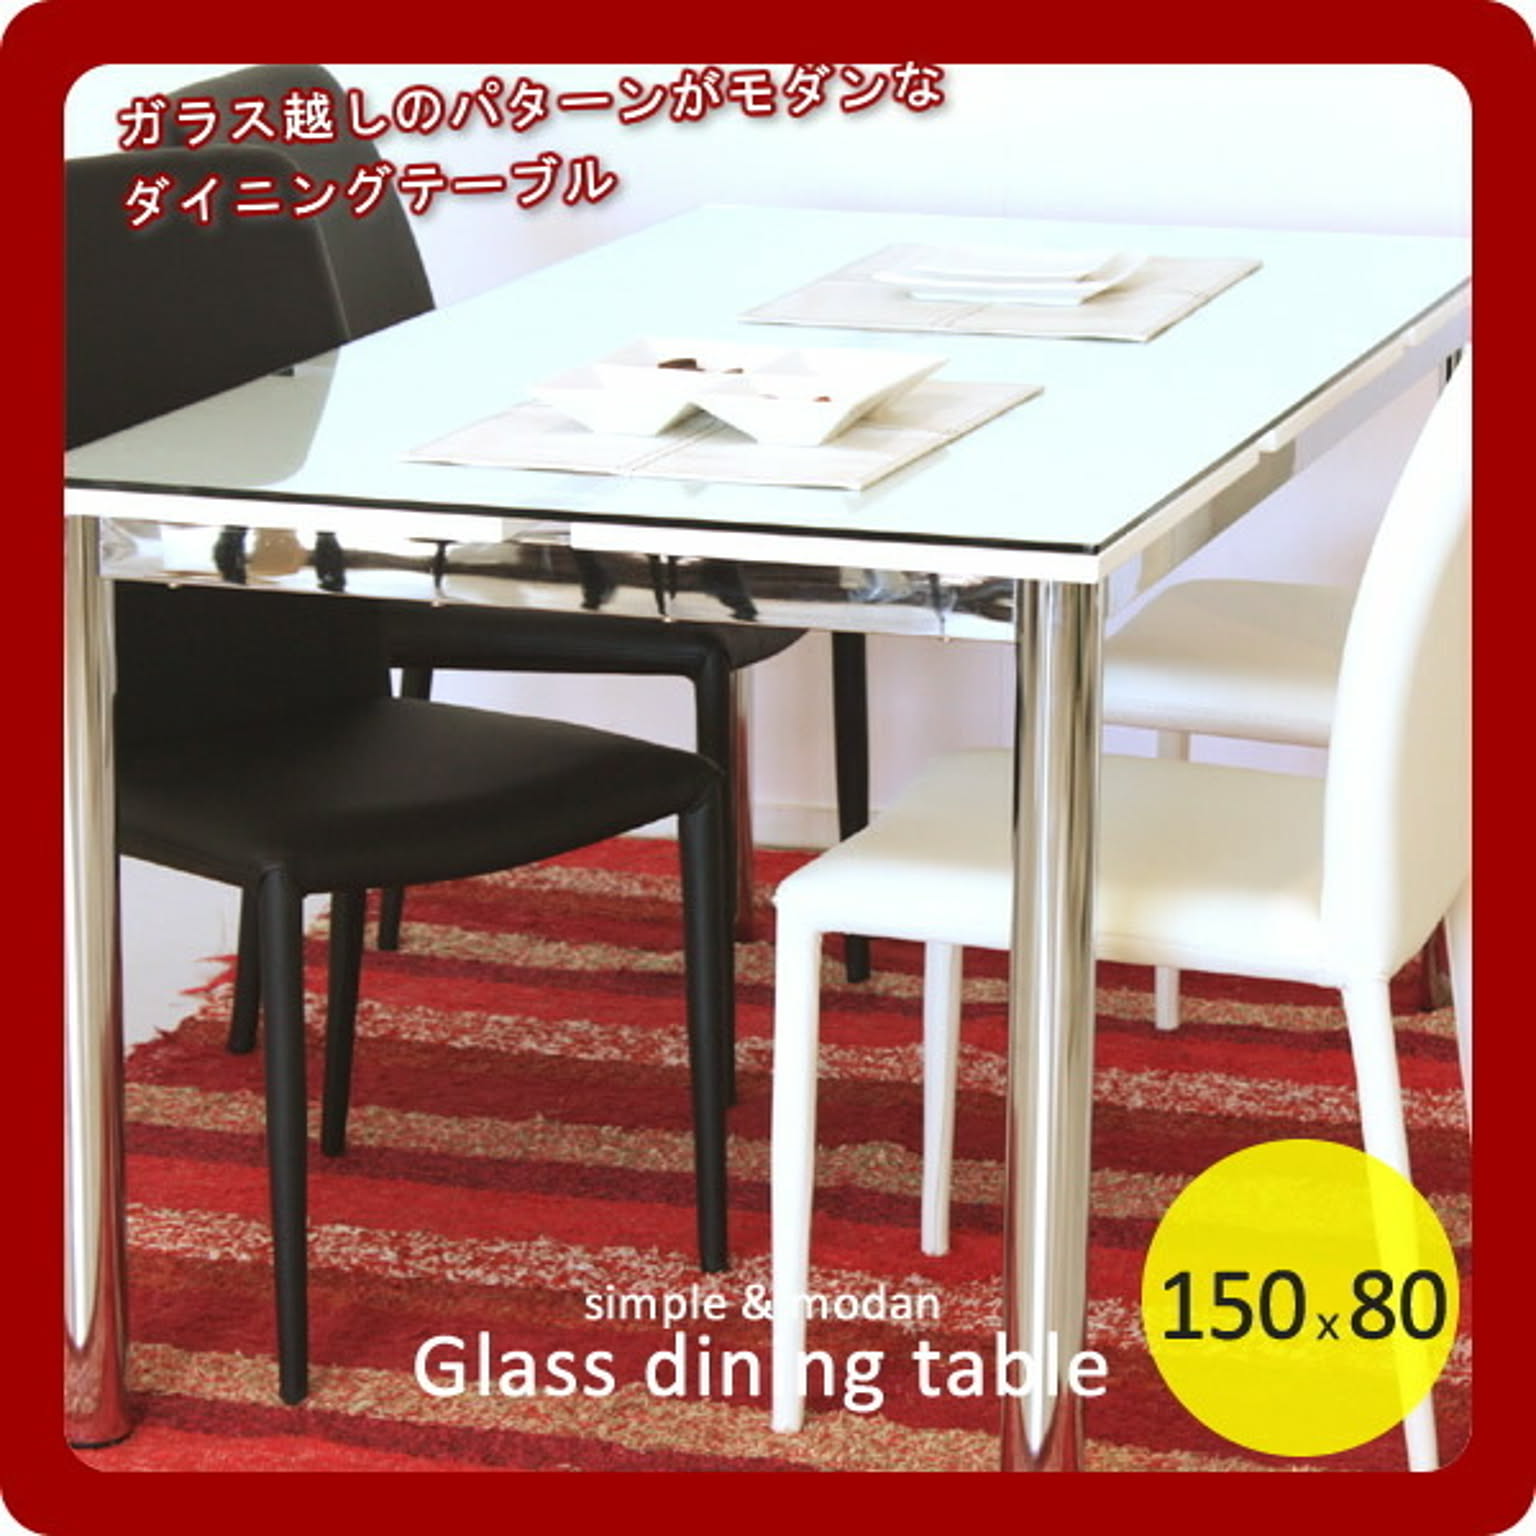 東馬 / ガラスダイニングテーブル ホワイト